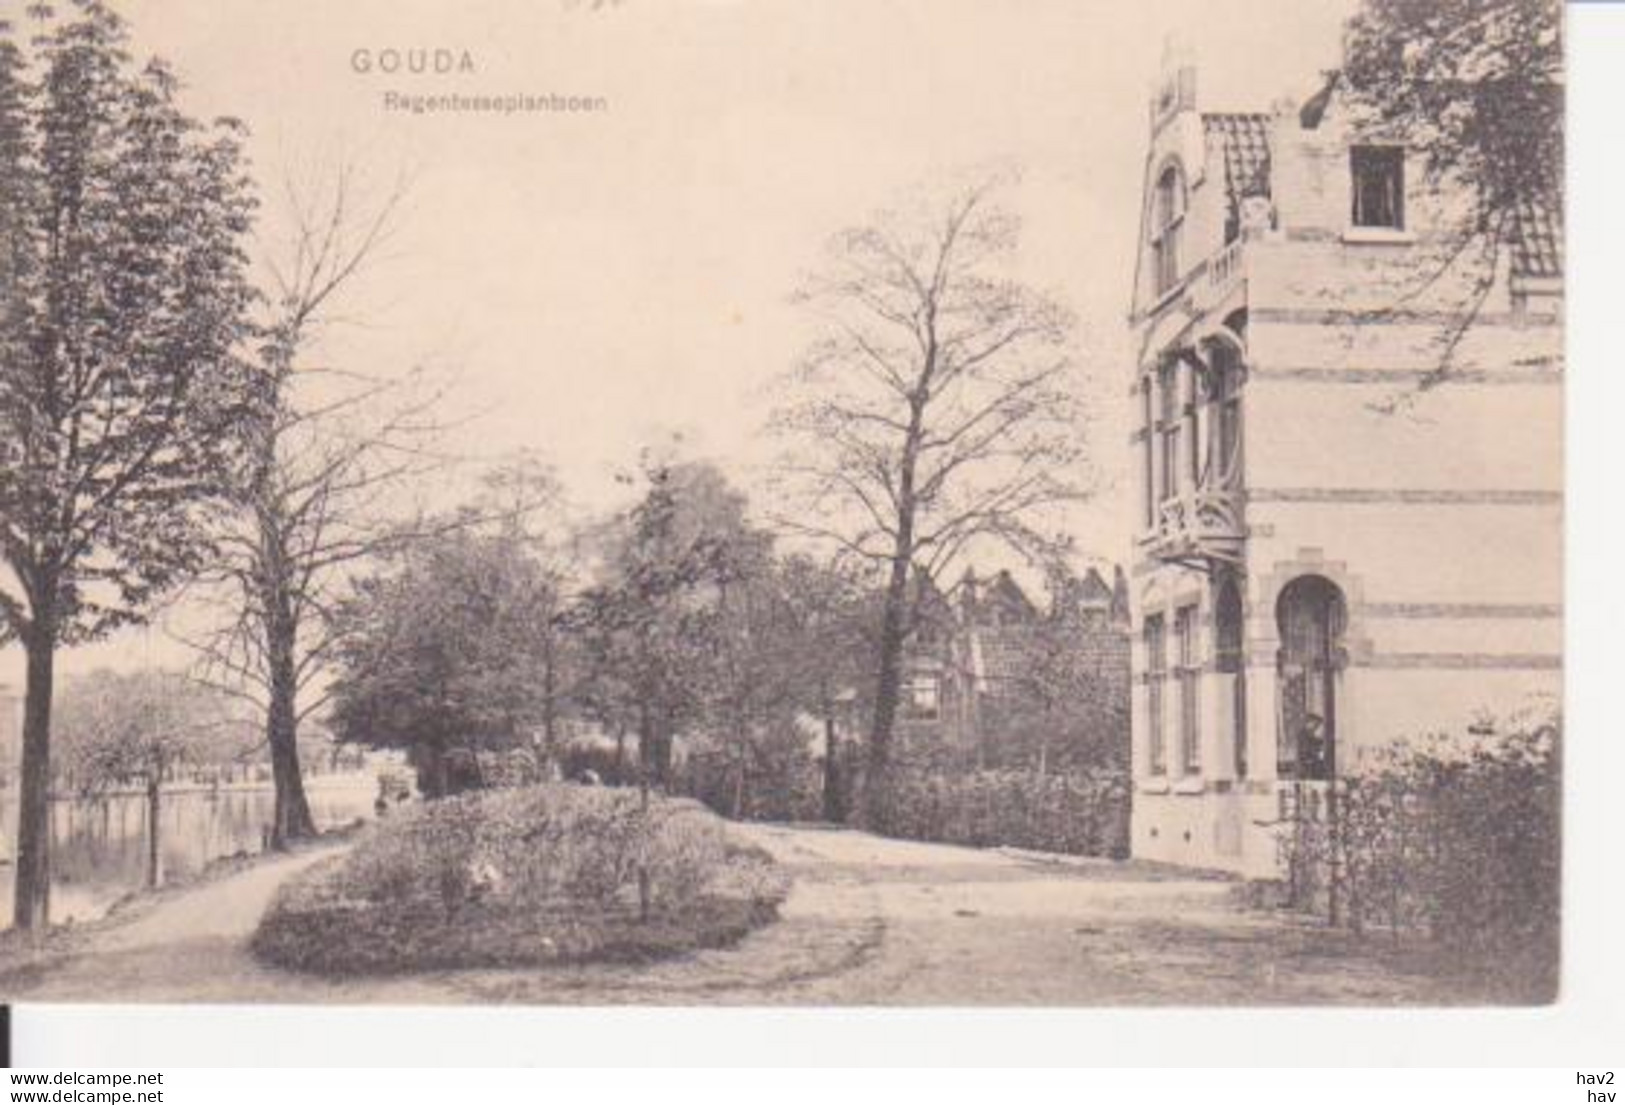 Gouda Regentesseplantsoen Ca. 1905 RY14389 - Gouda